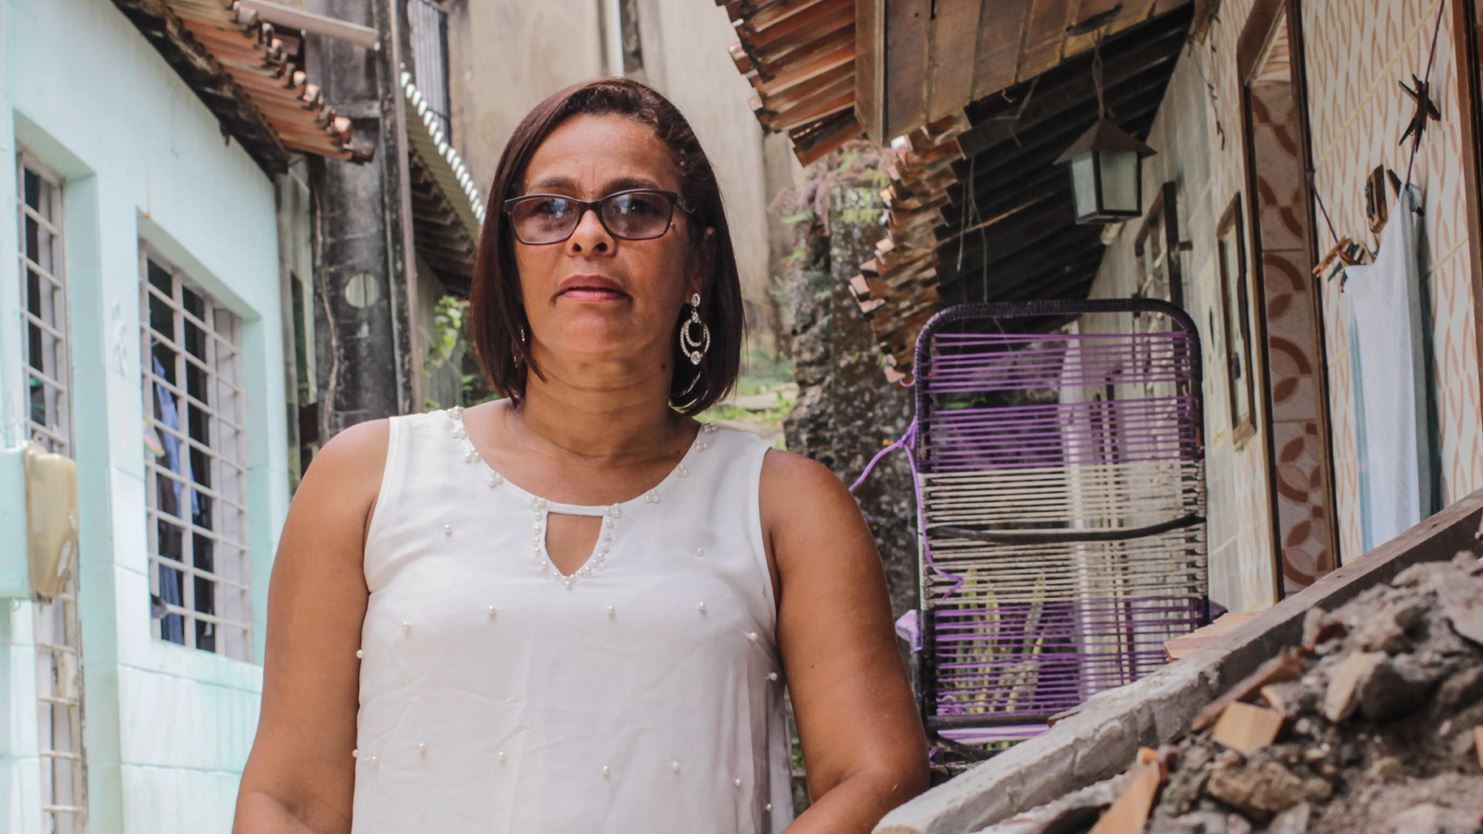 Une militante se tient debout devant des maisons d’une rue étroite du Brésil, une chaise longue en métal à côté d’elle.